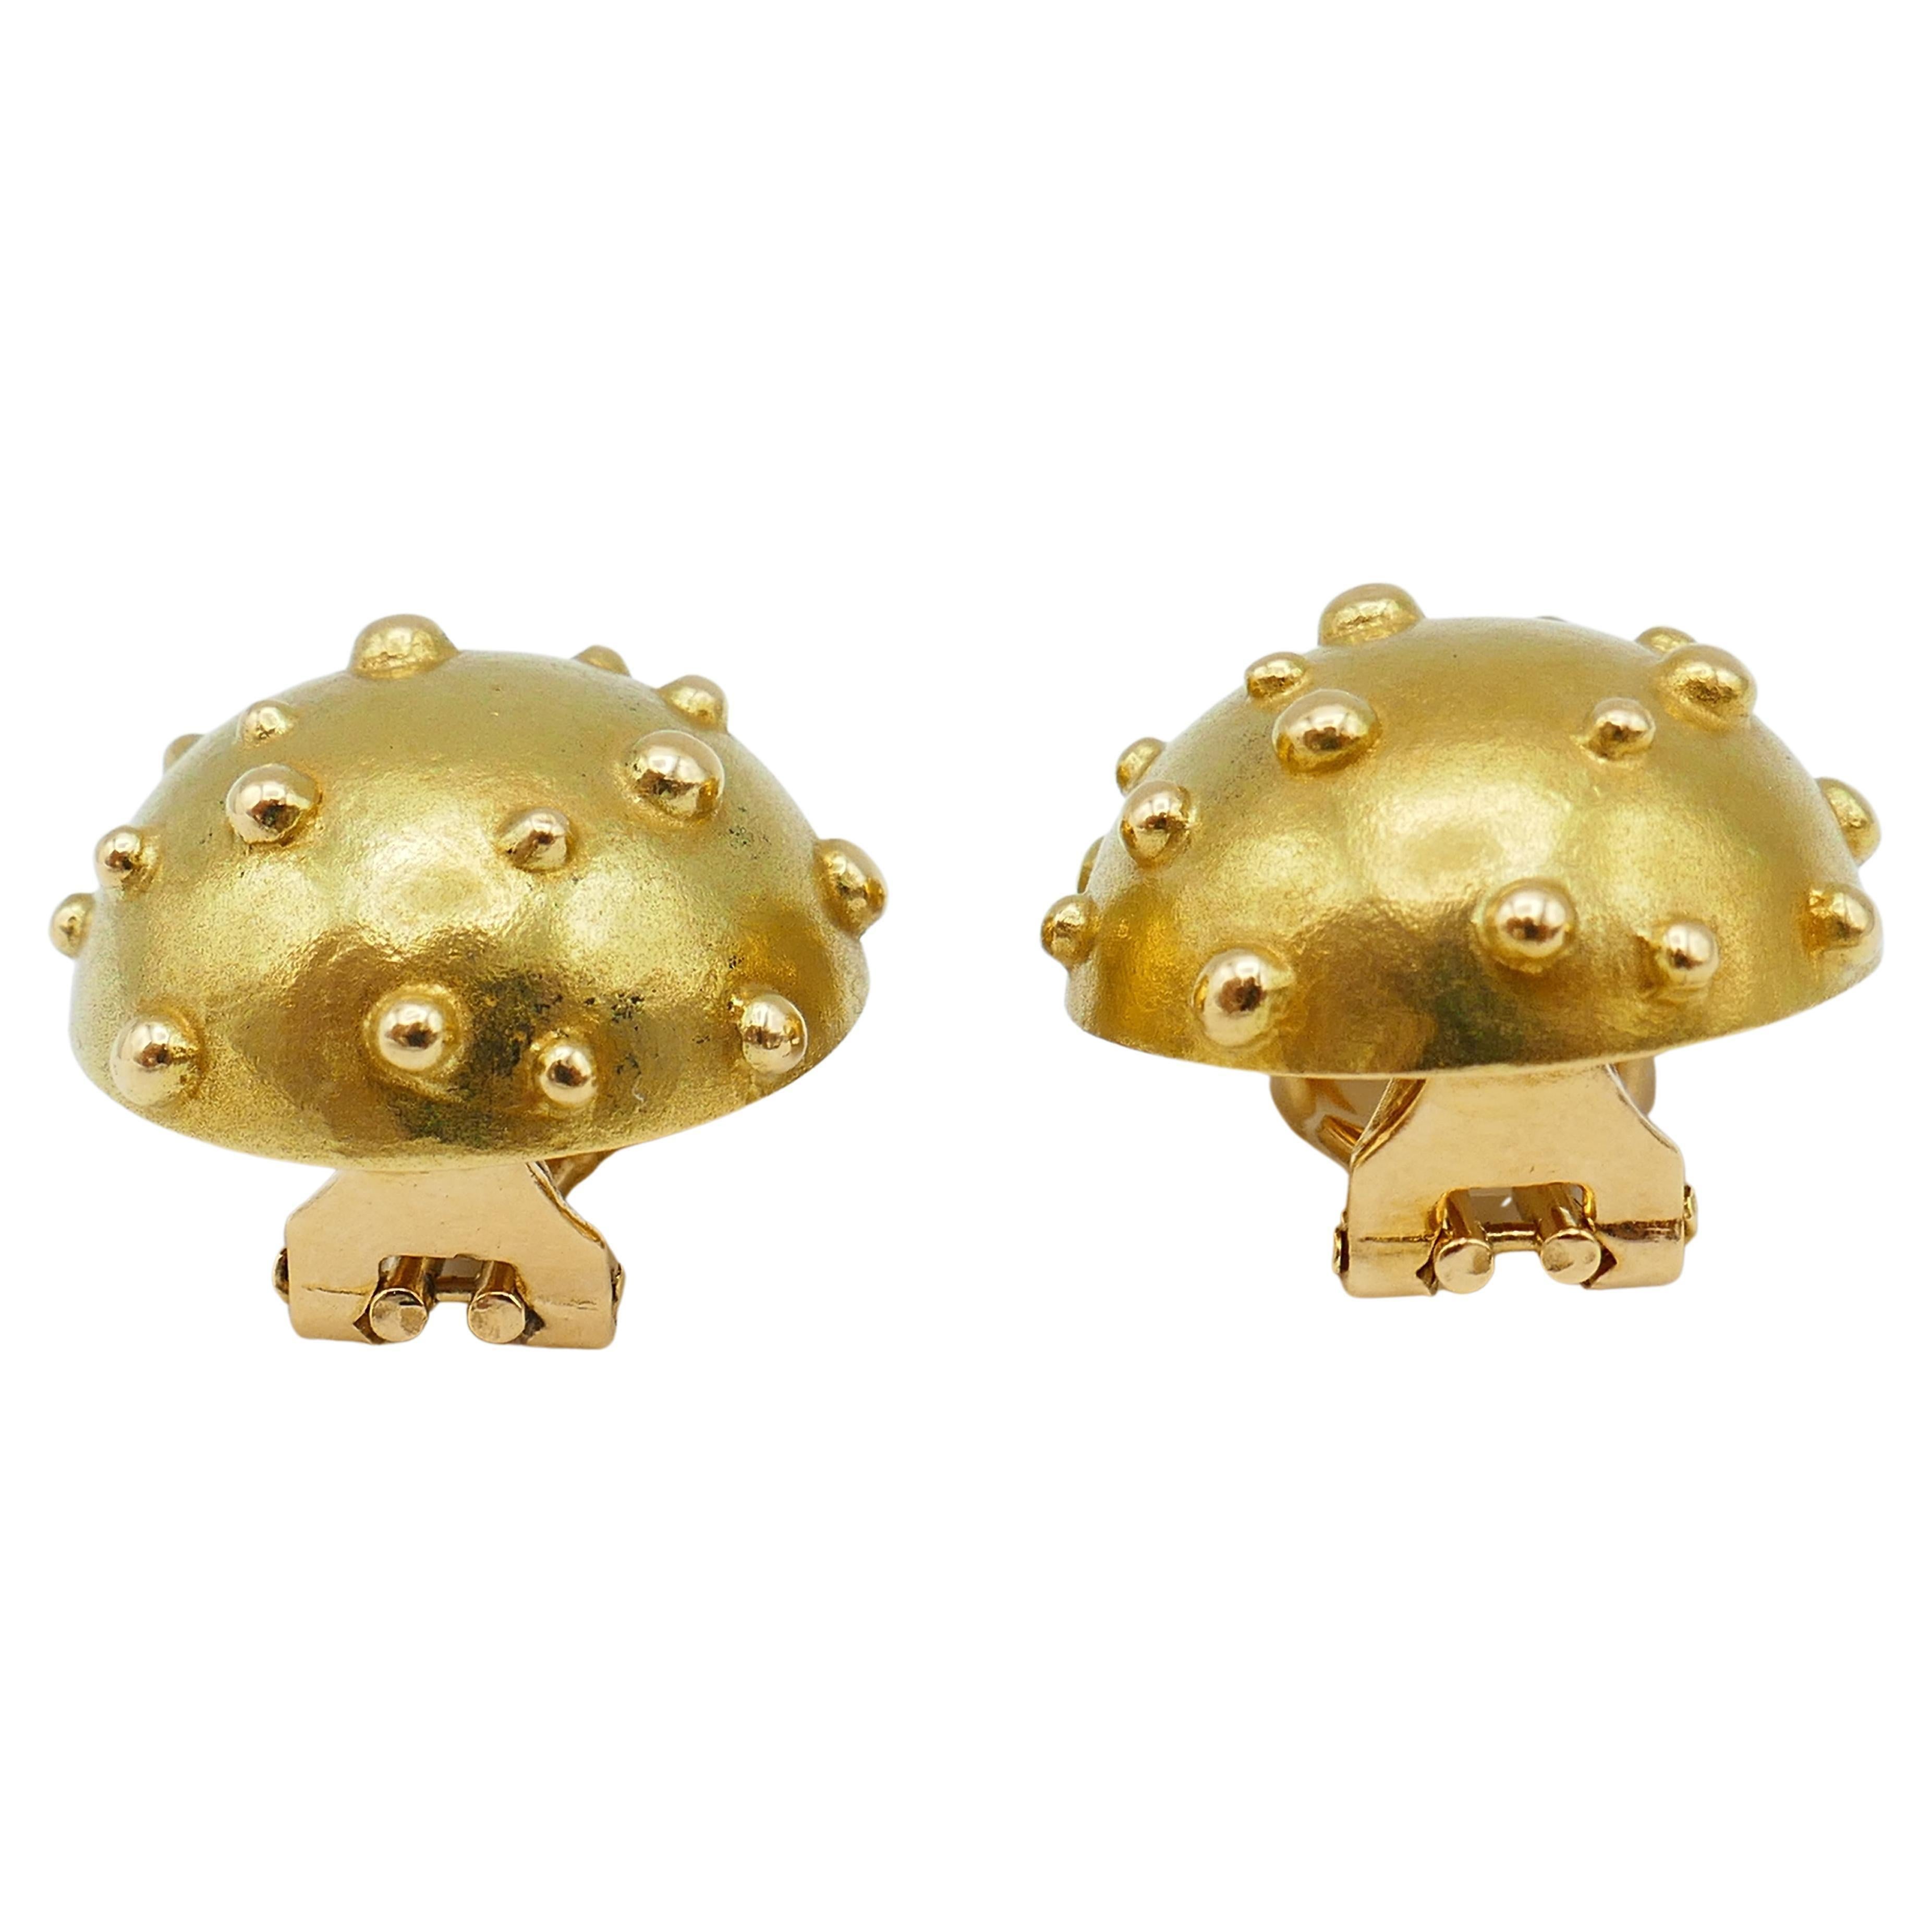 Ein hübsches und doch raffiniertes Paar Tiffany & Co. Goldene Ohrringe Dot Mushroom. 
Die Ohrringe haben ein einfaches, reines Aussehen, aber sie sind lustig, eloquent und sichtbar durch Design.
Beachten Sie die konvexe Kuppelform und die goldene